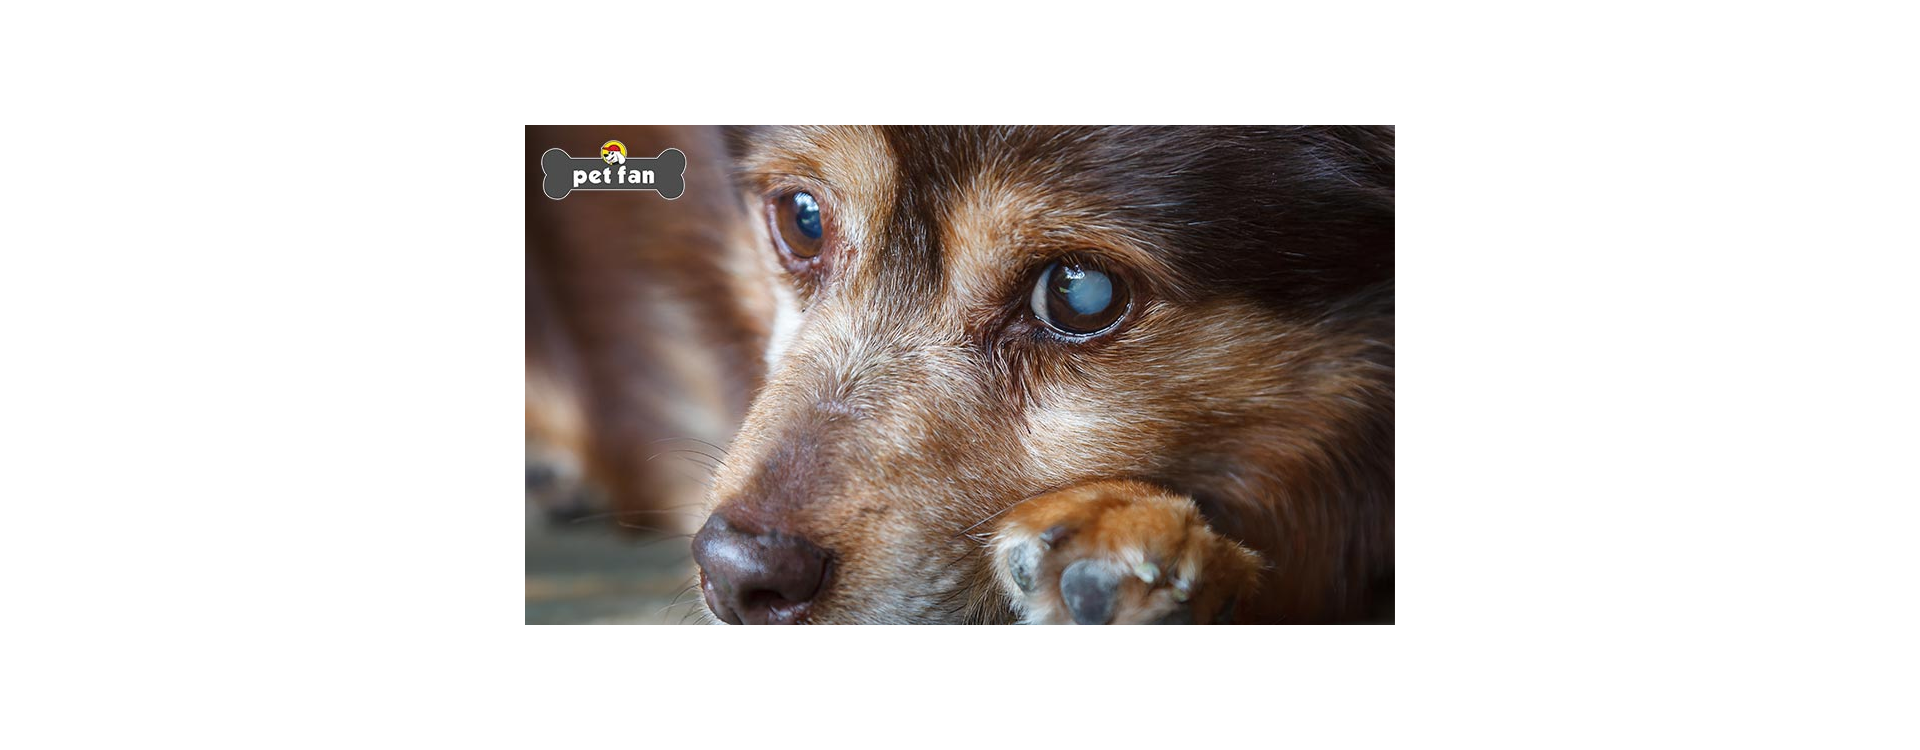 Τύφλωση στον σκύλο: Σημάδια, αιτίες και τρόποι αντιμετώπισής της